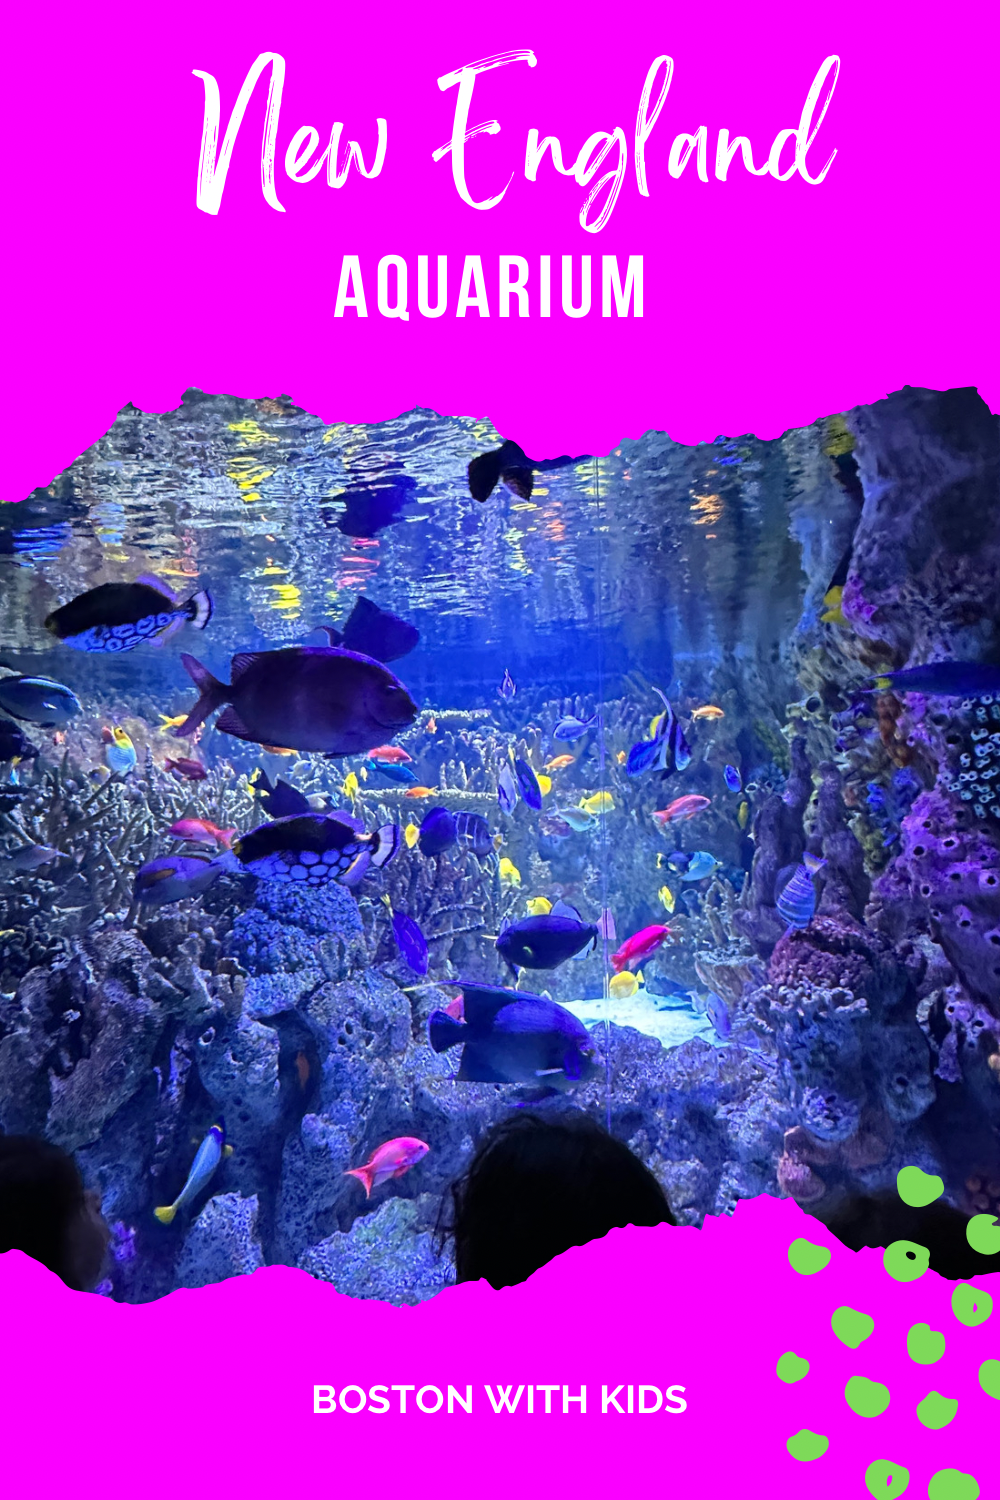 Boston Aquarium with kids